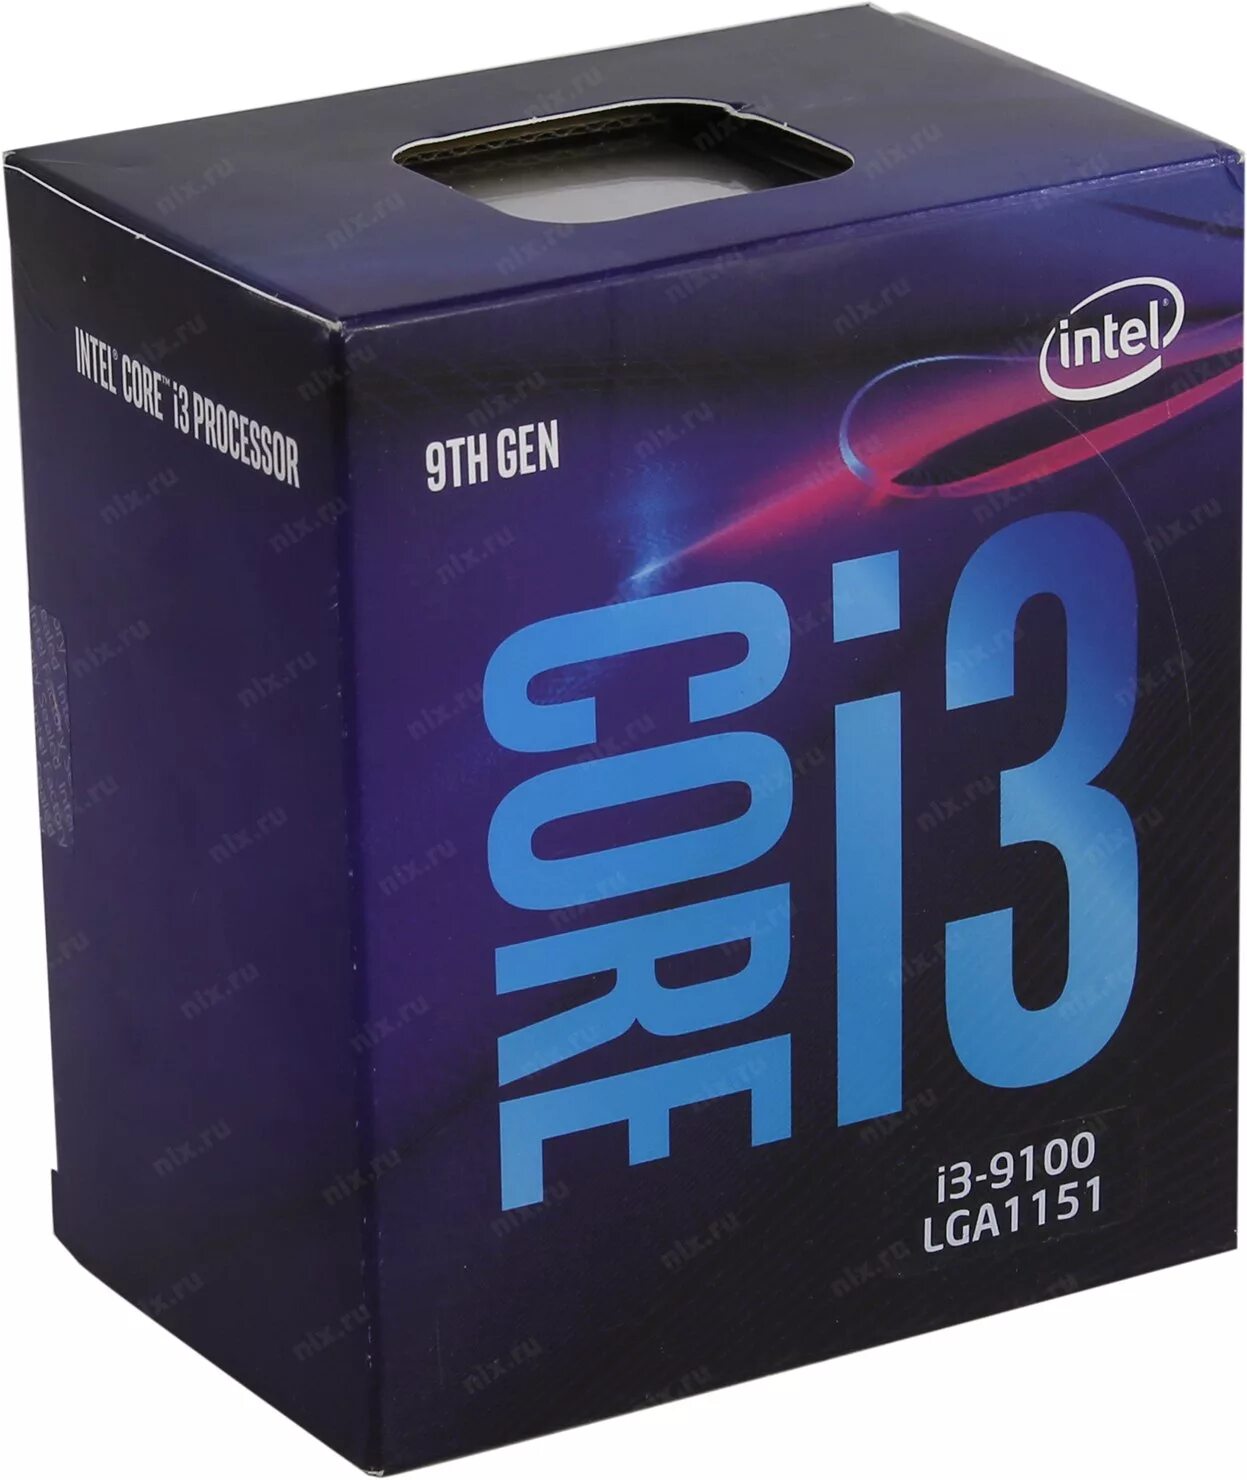 9100f сокет. Core i3-9100f Box. Процессор Intel Core i3-9100f. Intel Core i3-9100 (Box). Intel Core i3-9100f lga1151 v2, 4 x 3600 МГЦ.